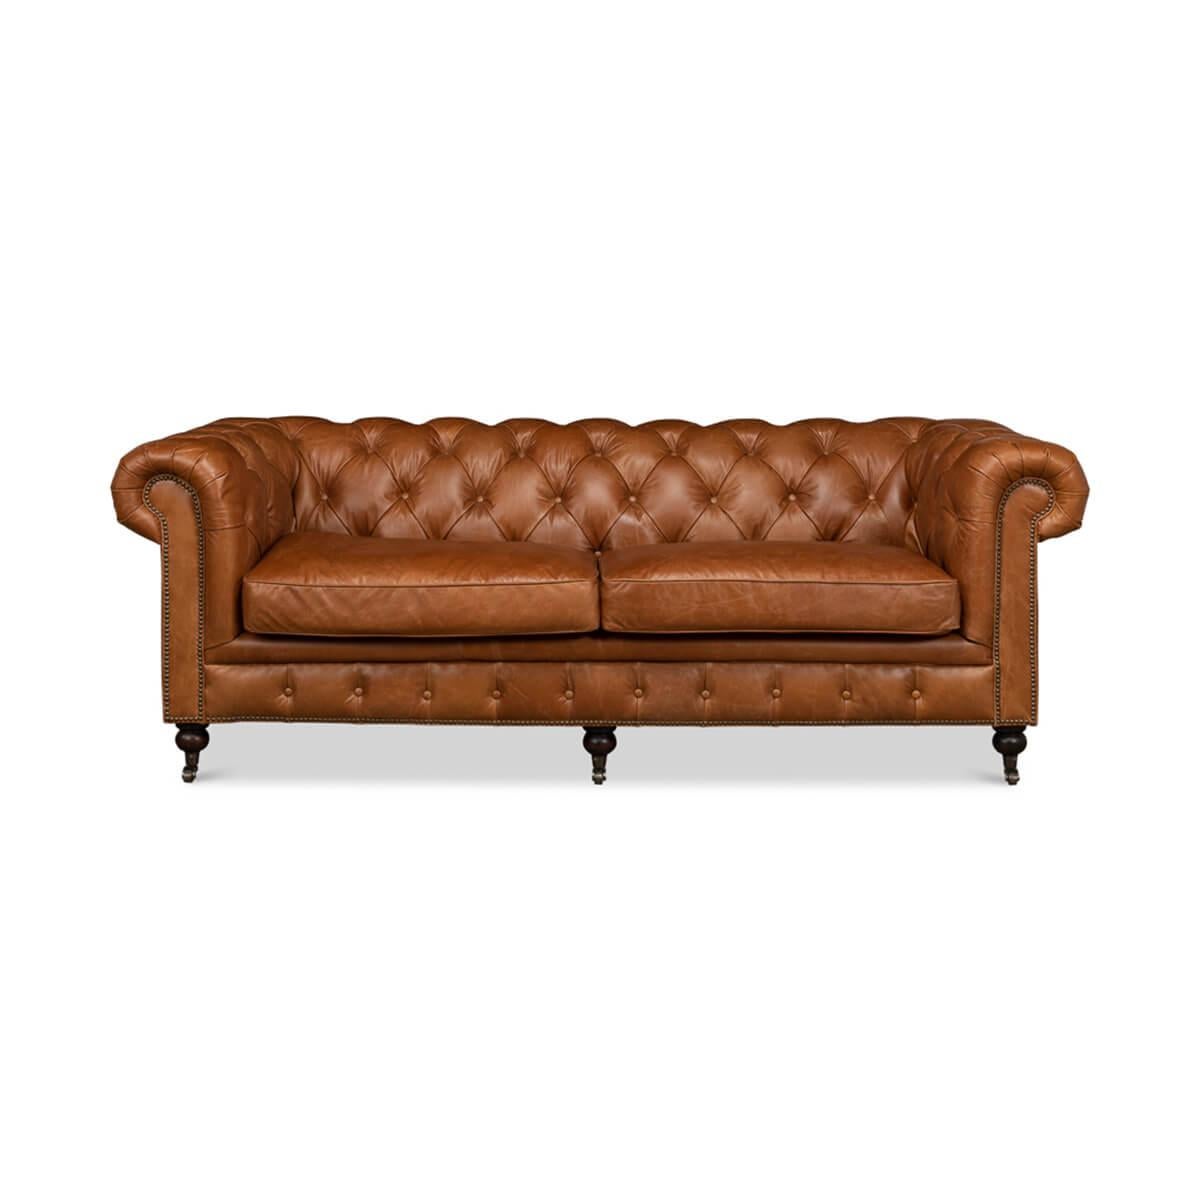 Ein klassisches Chesterfield-Sofa im Vintage-Stil aus braunem Wiener Leder. Dieses traditionelle englische Sofa zeichnet sich durch eine Innenausstattung mit Knopftuft, überrollbare Armlehnen, Nagelverzierungen und gedrechselte Beine mit Rollen mit